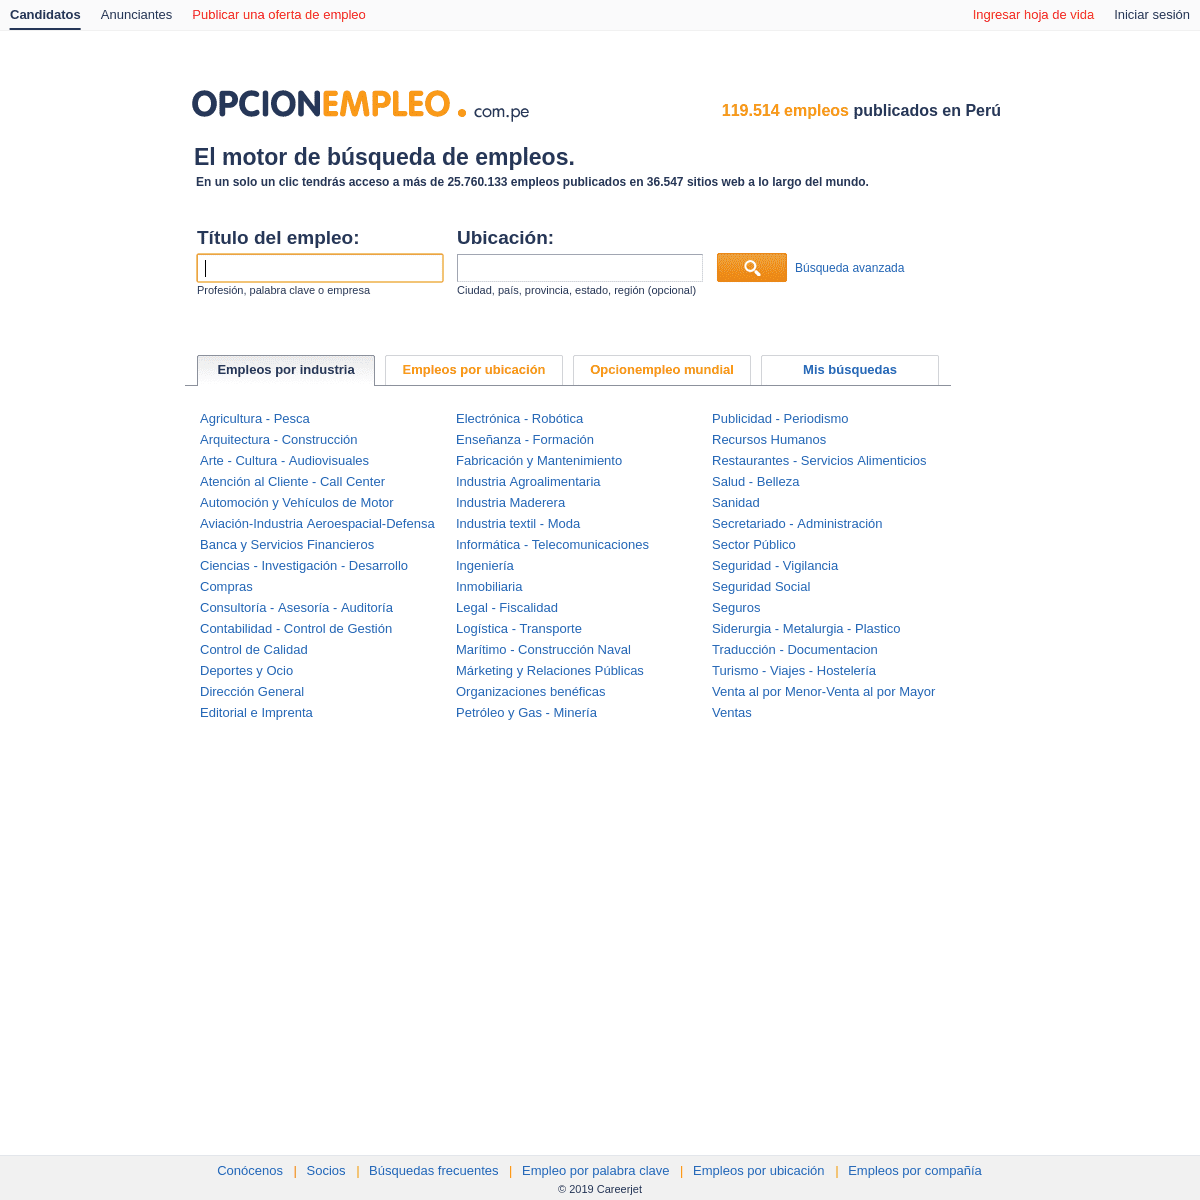 A complete backup of opcionempleo.com.pe